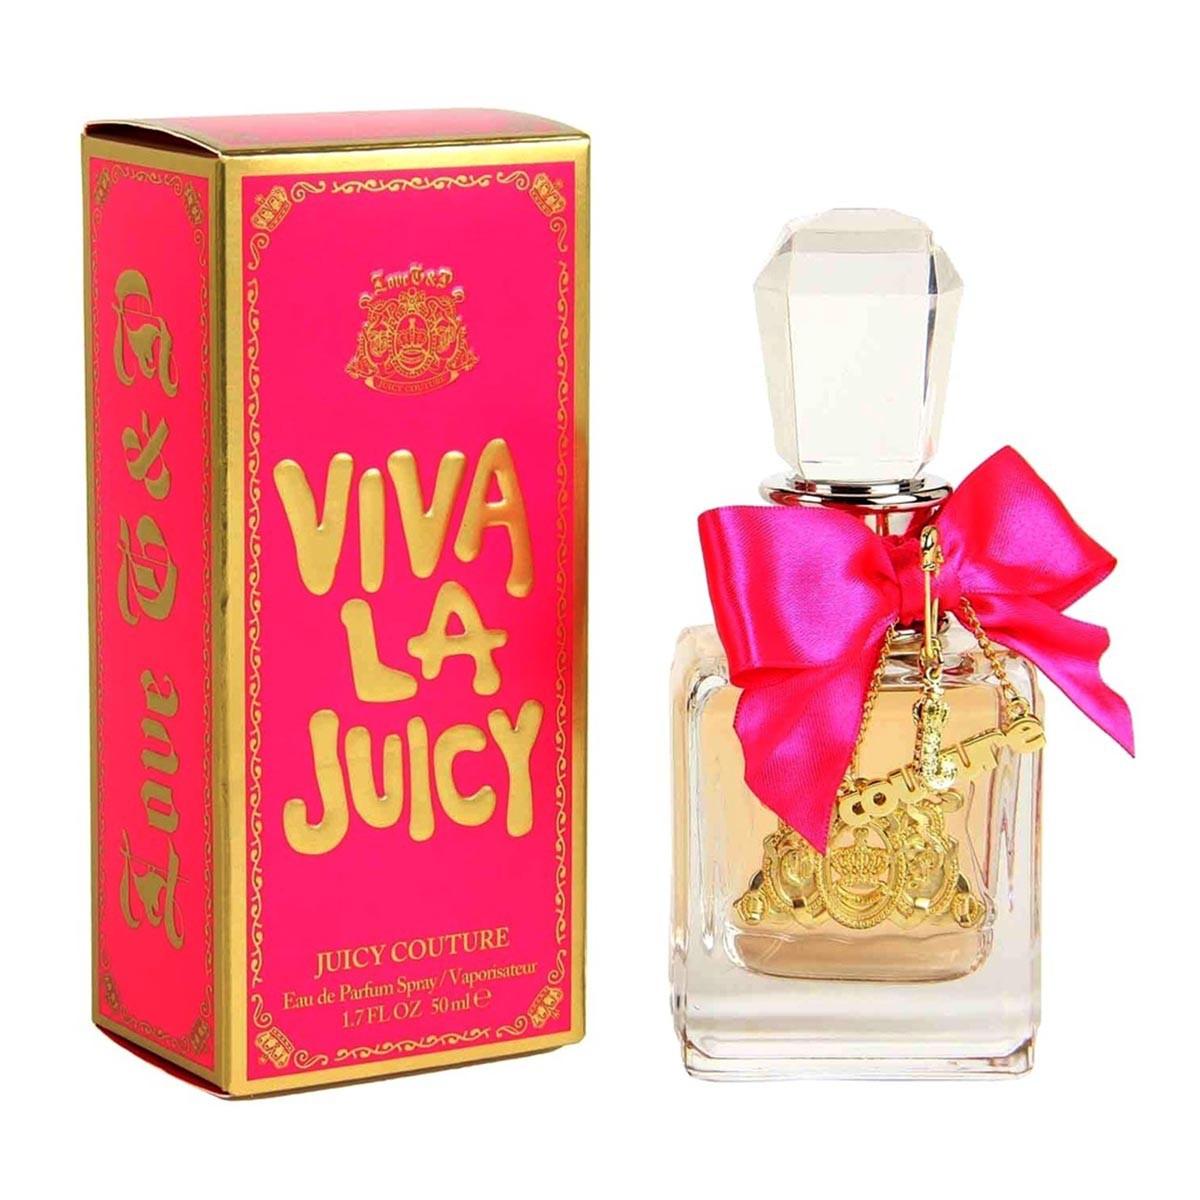 juicy-couture-viva-la-juicy-eau-de-parfum-50ml-perfumy